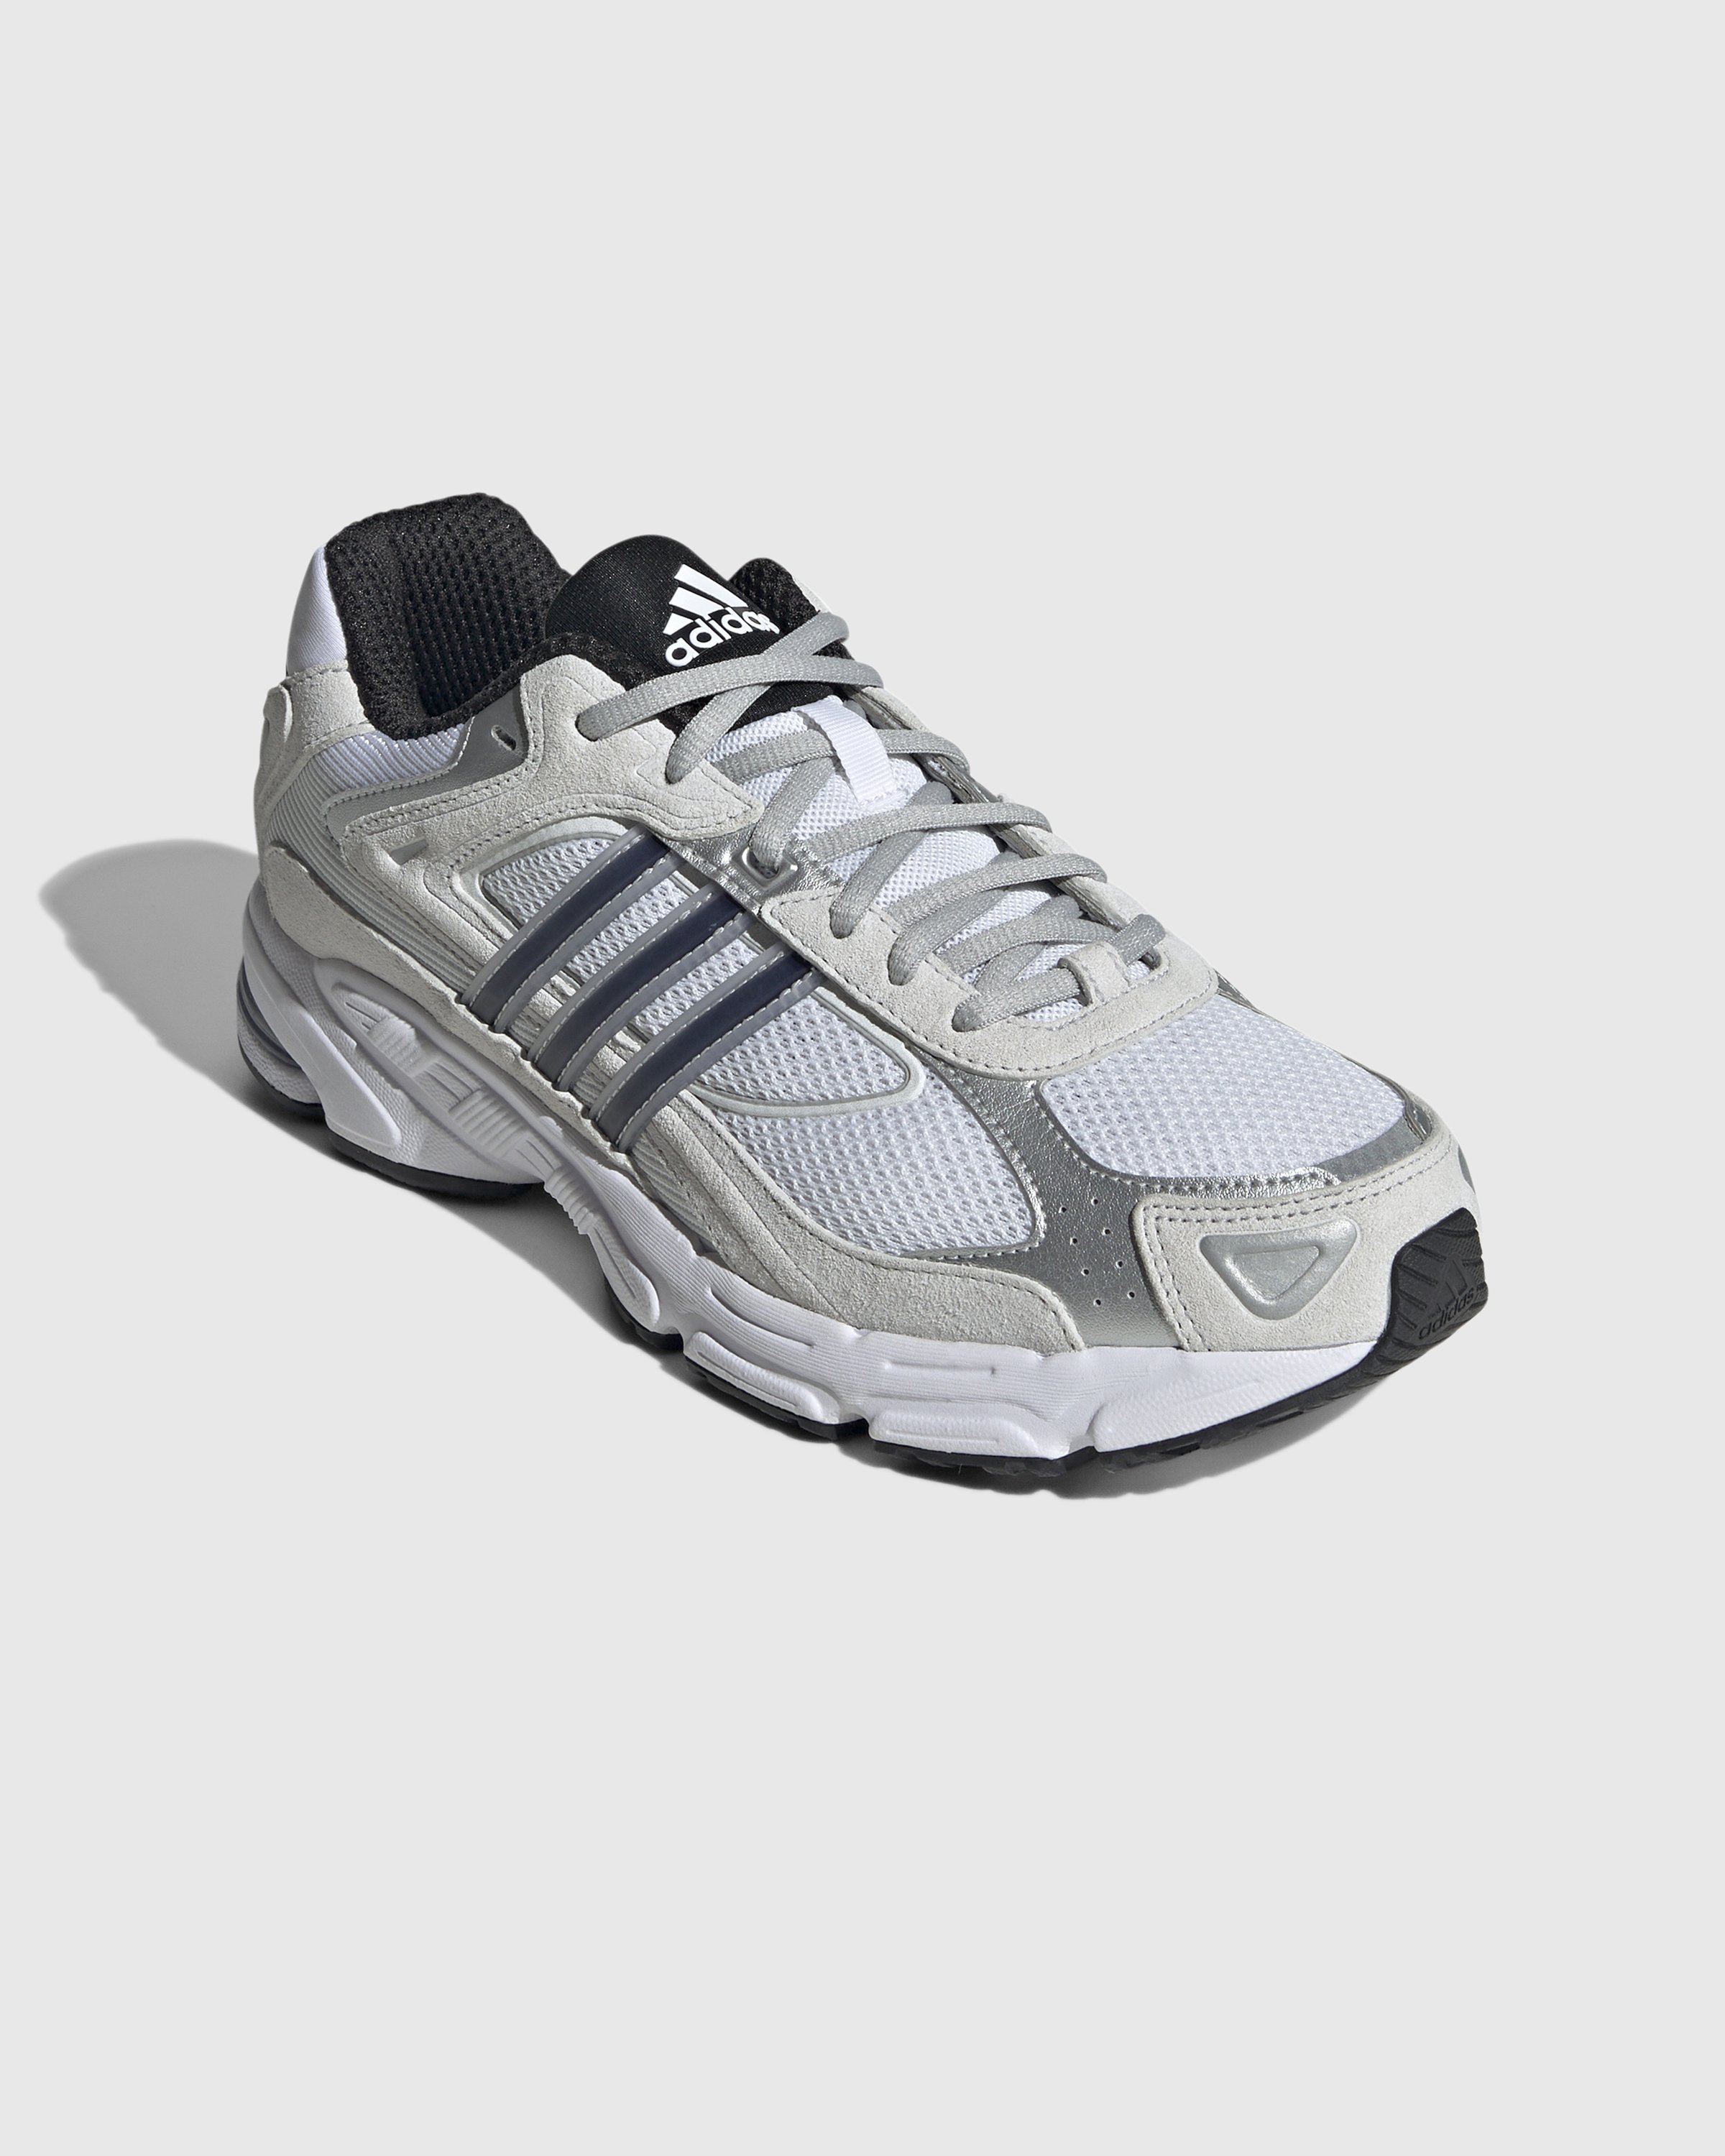 Adidas - Response CL White/Black - Footwear - White - Image 3